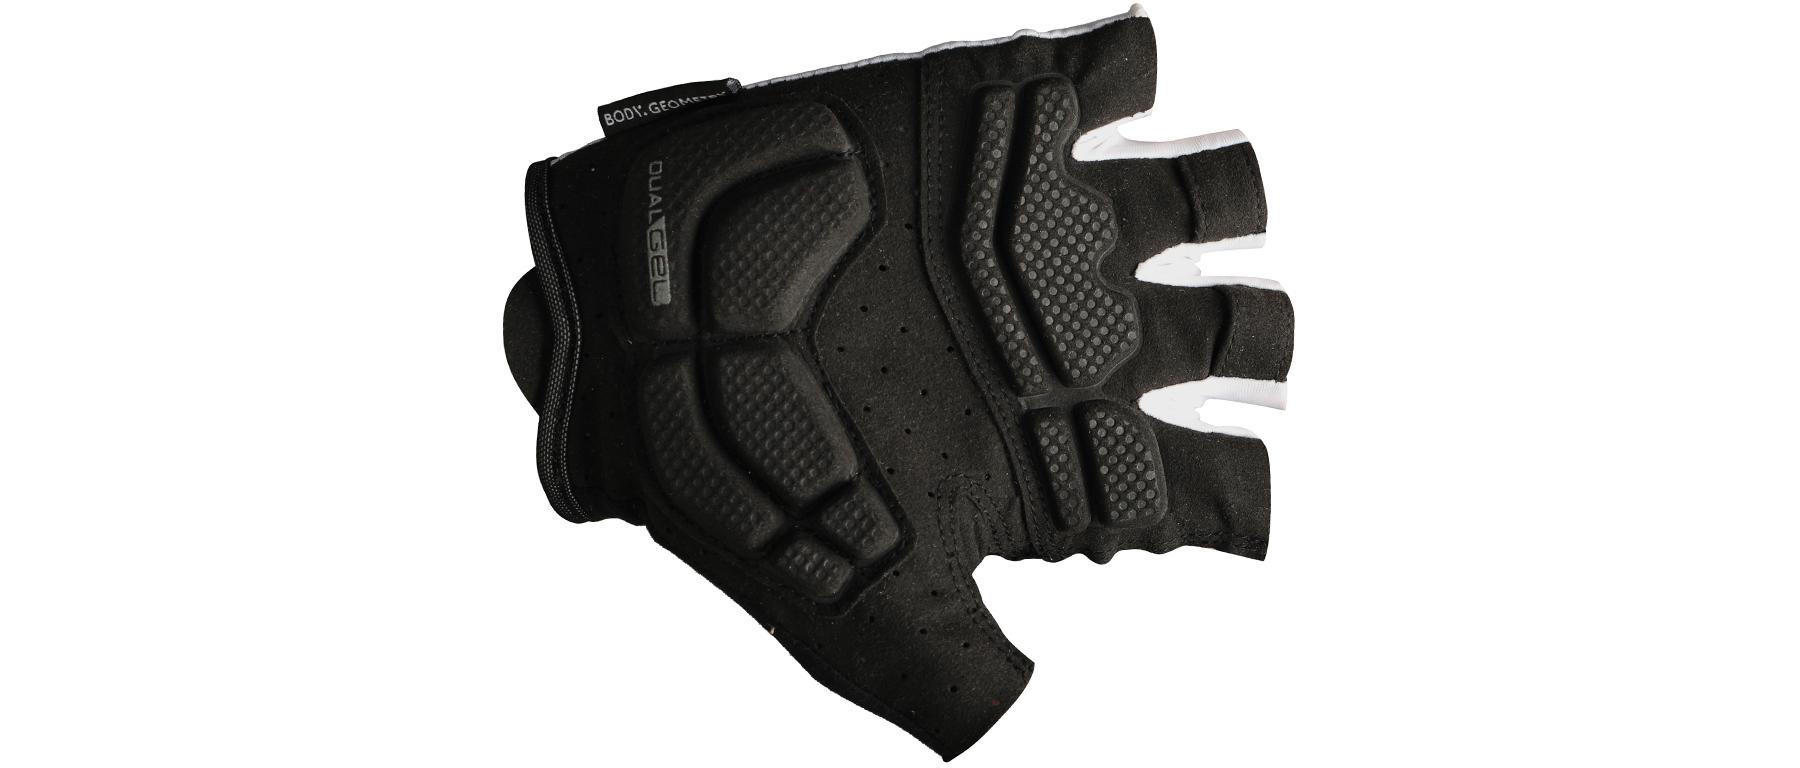 Specialized Body Geometry Dual Gel SF Glove